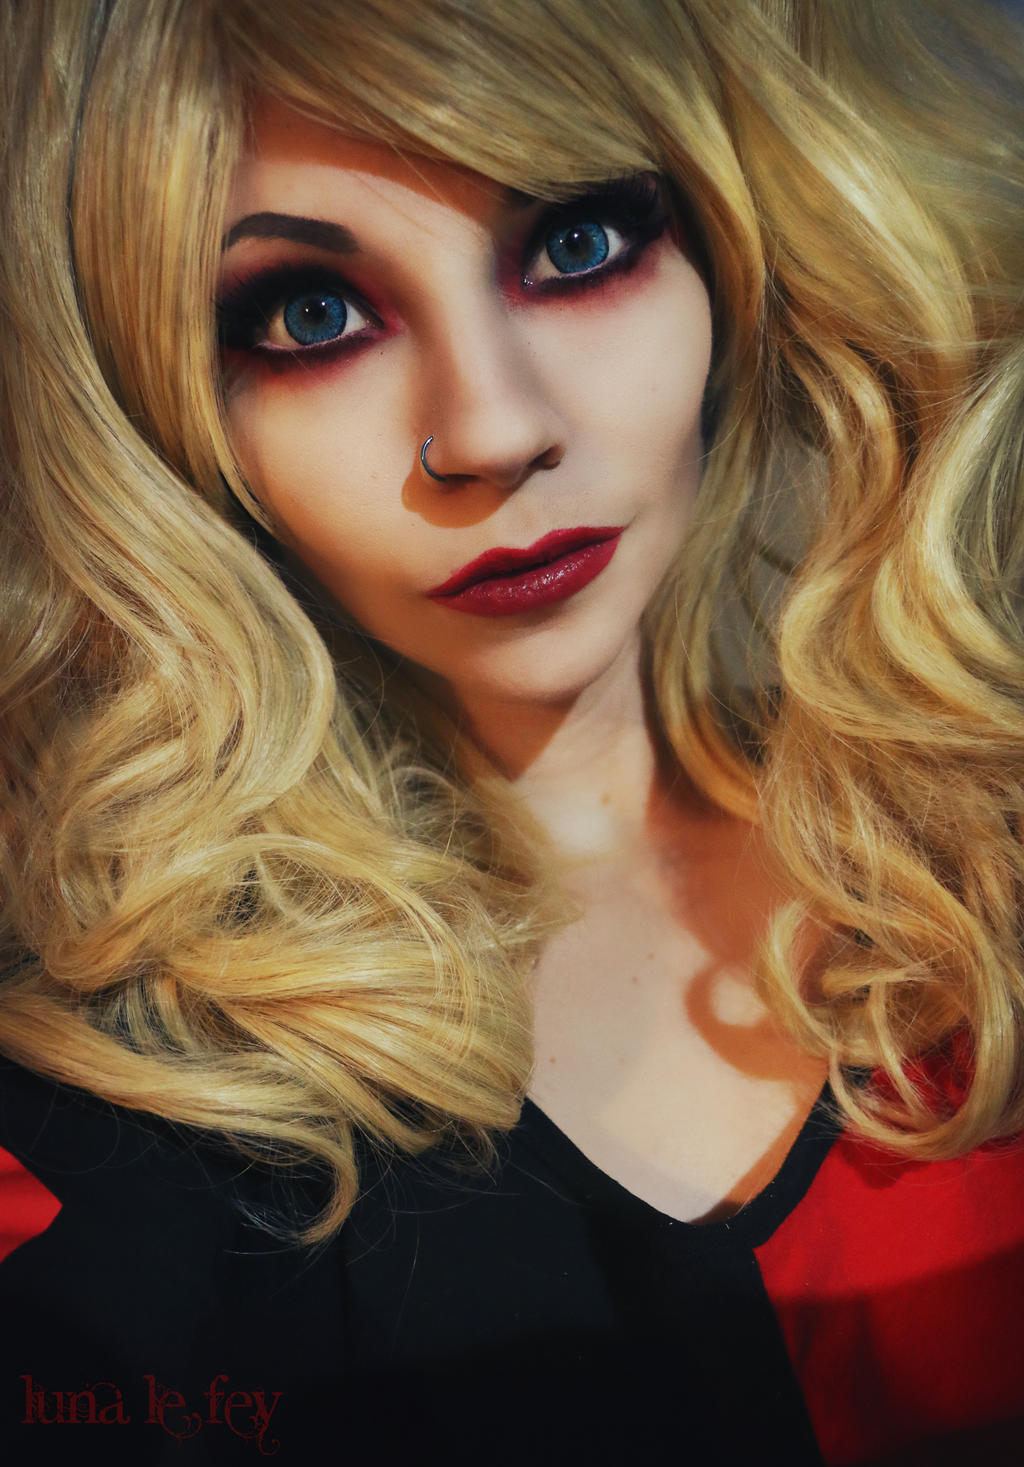 Harley Quinn by LunaLeFey on DeviantArt